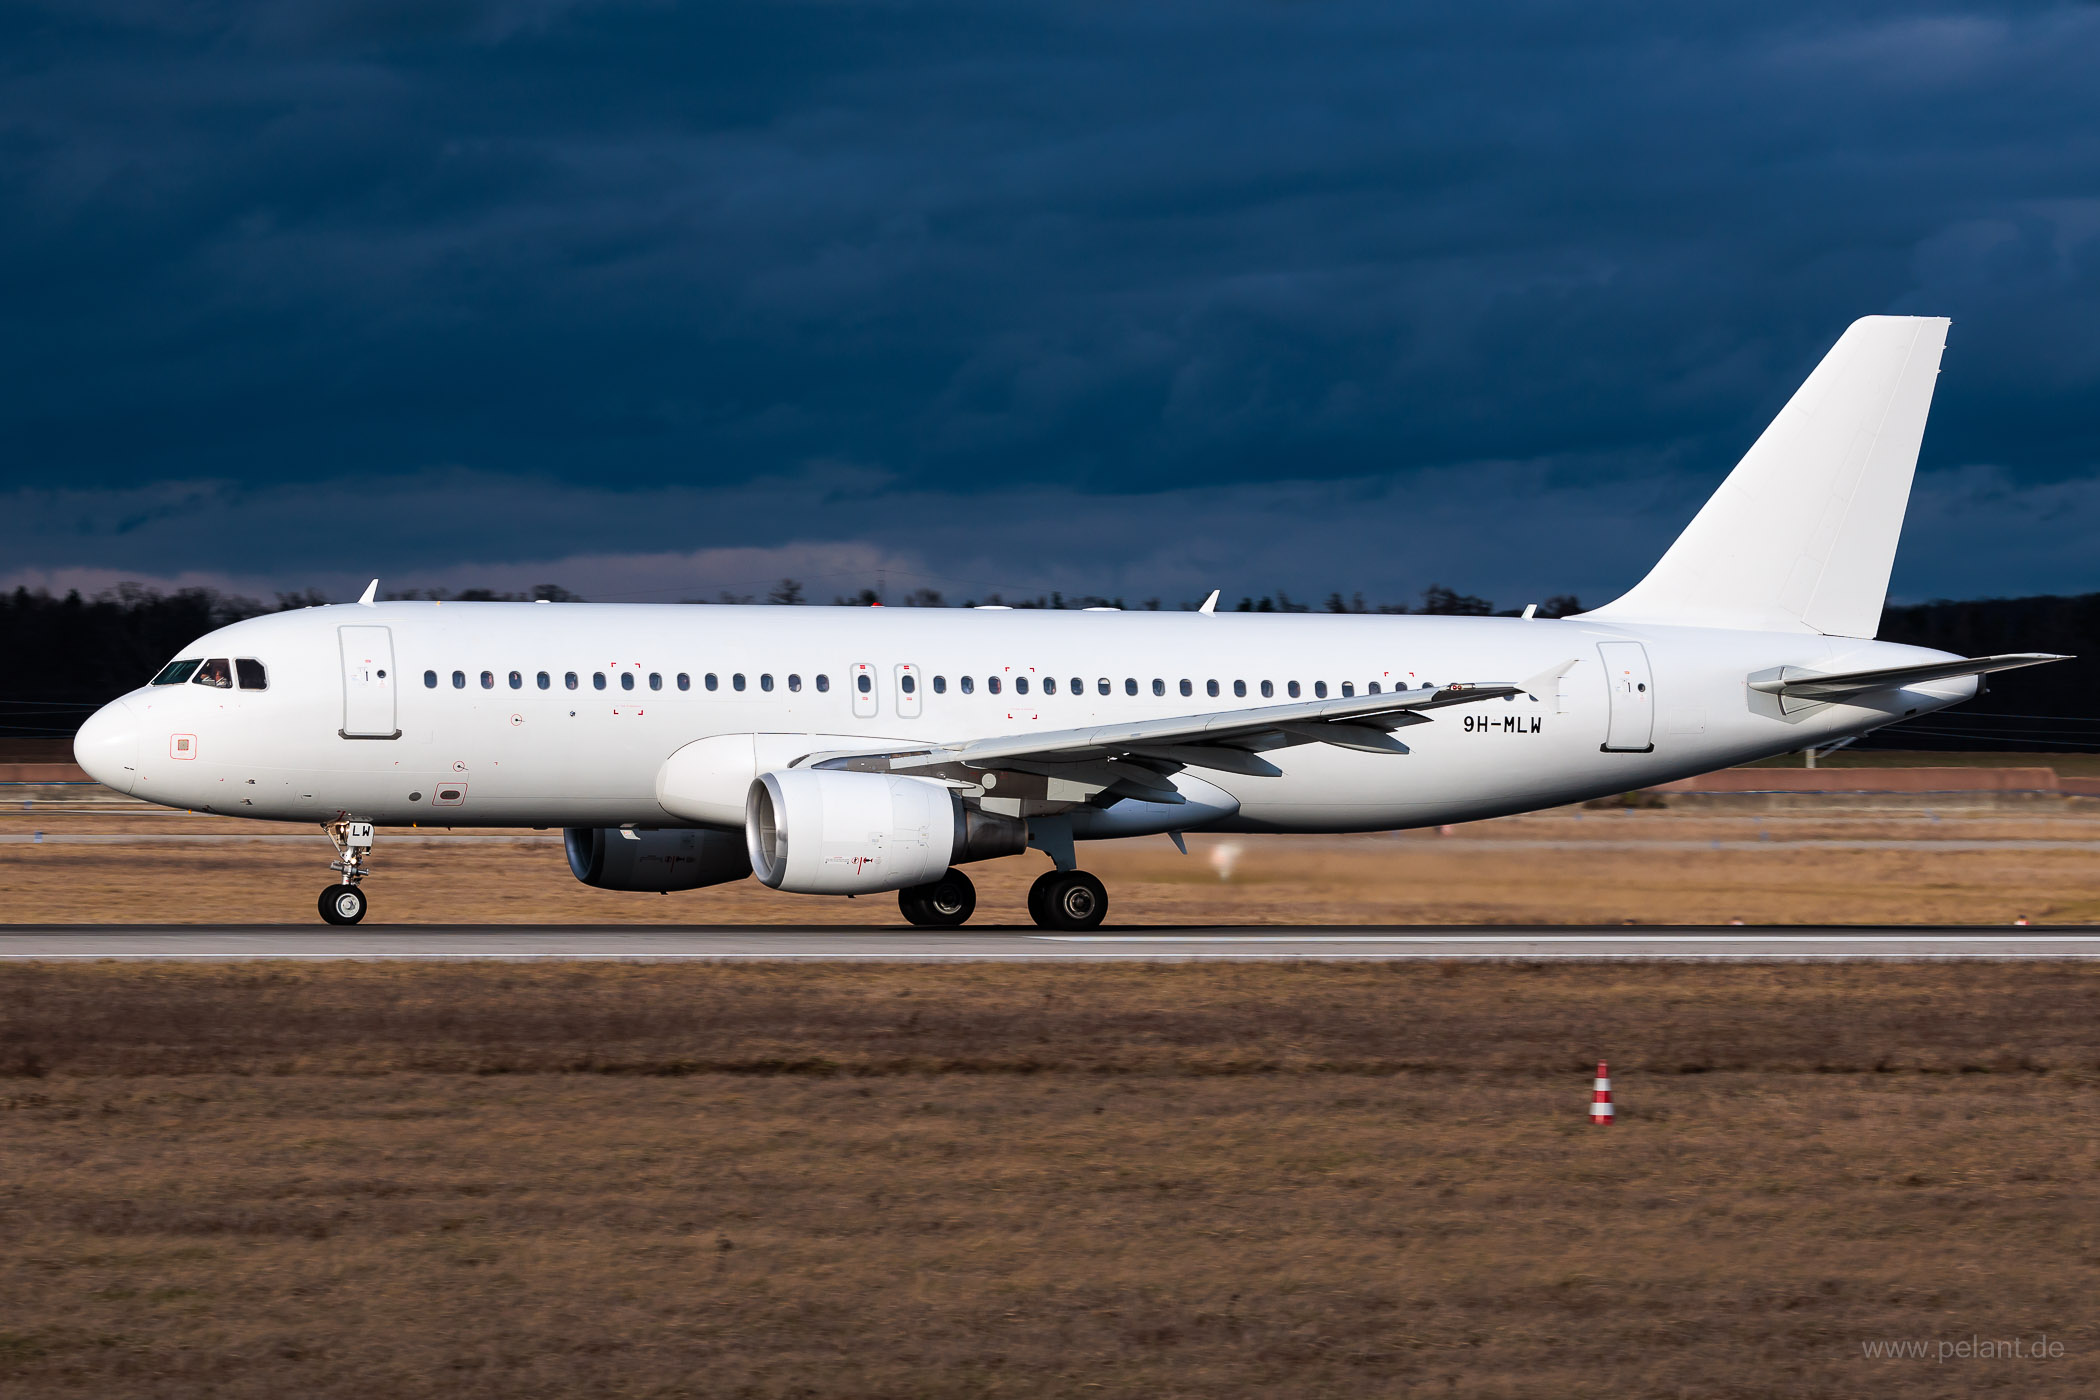 9H-MLW Avion Express Malta Airbus A320-214 in Stuttgart / STR (ganz wei Livery)